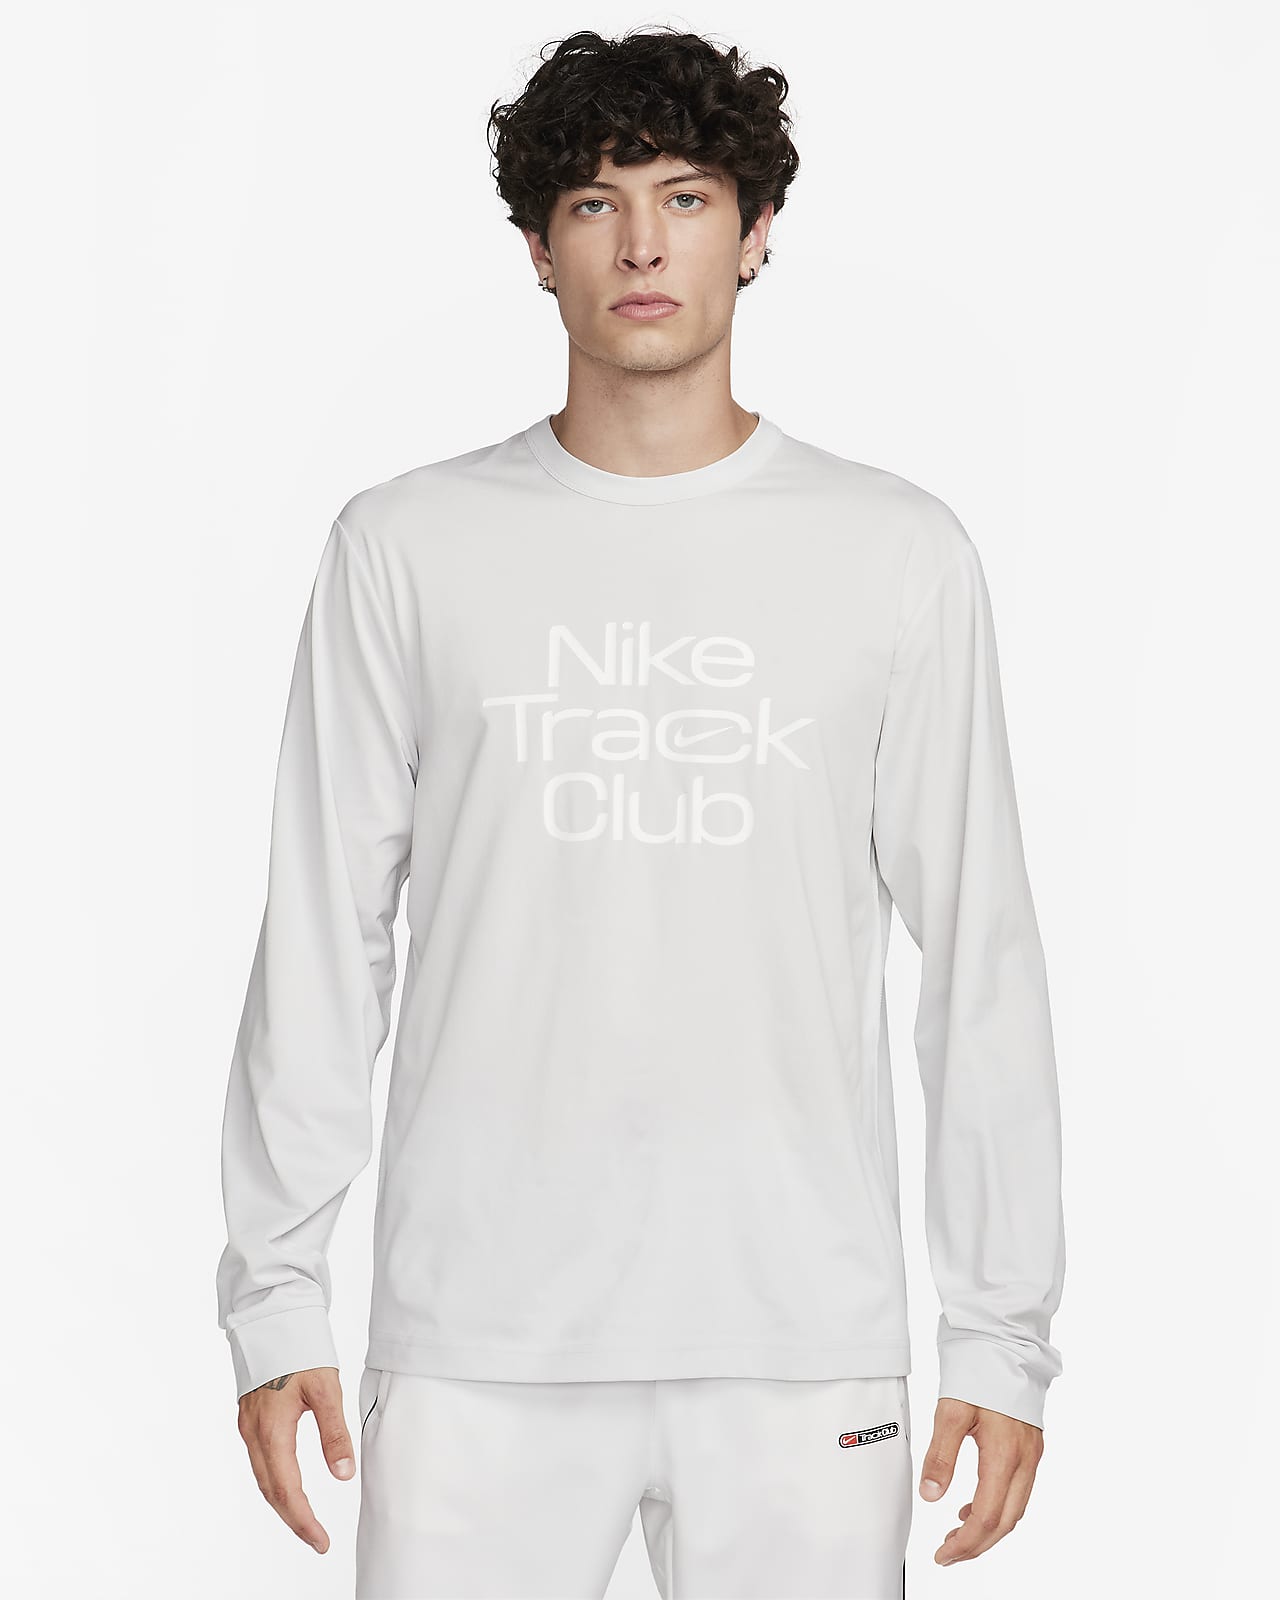 Ανδρική κοντομάνικη μπλούζα για τρέξιμο Dri-FIT Hyverse Nike Track Club